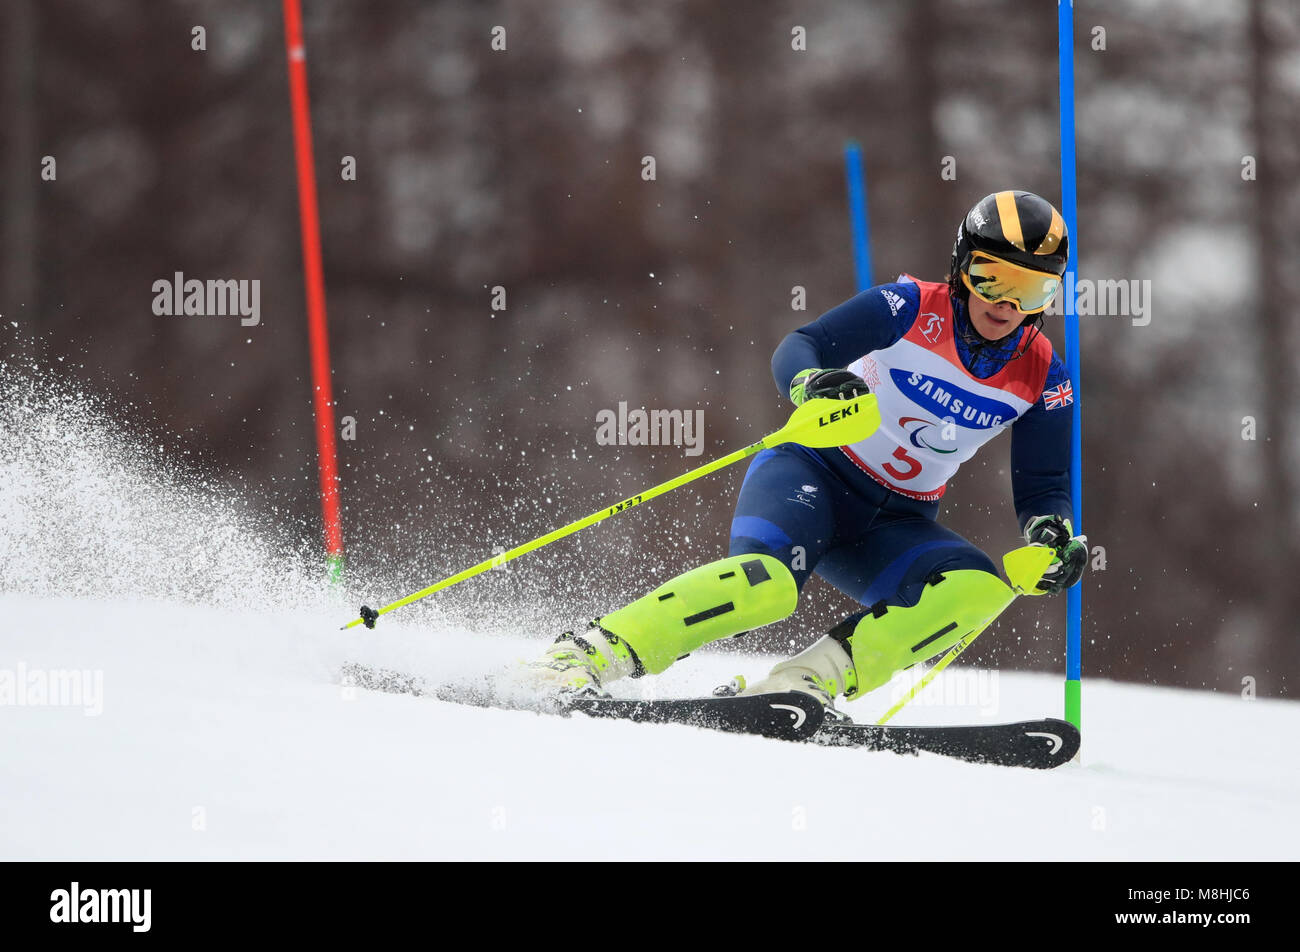 Great Britain's Millie Knight n le Slalom femmes, des déficients visuels au centre alpin de Jeongseon pendant neuf jours de l'hiver 2018 de PyeongChang Jeux paralympiques à la Corée du Sud. Banque D'Images